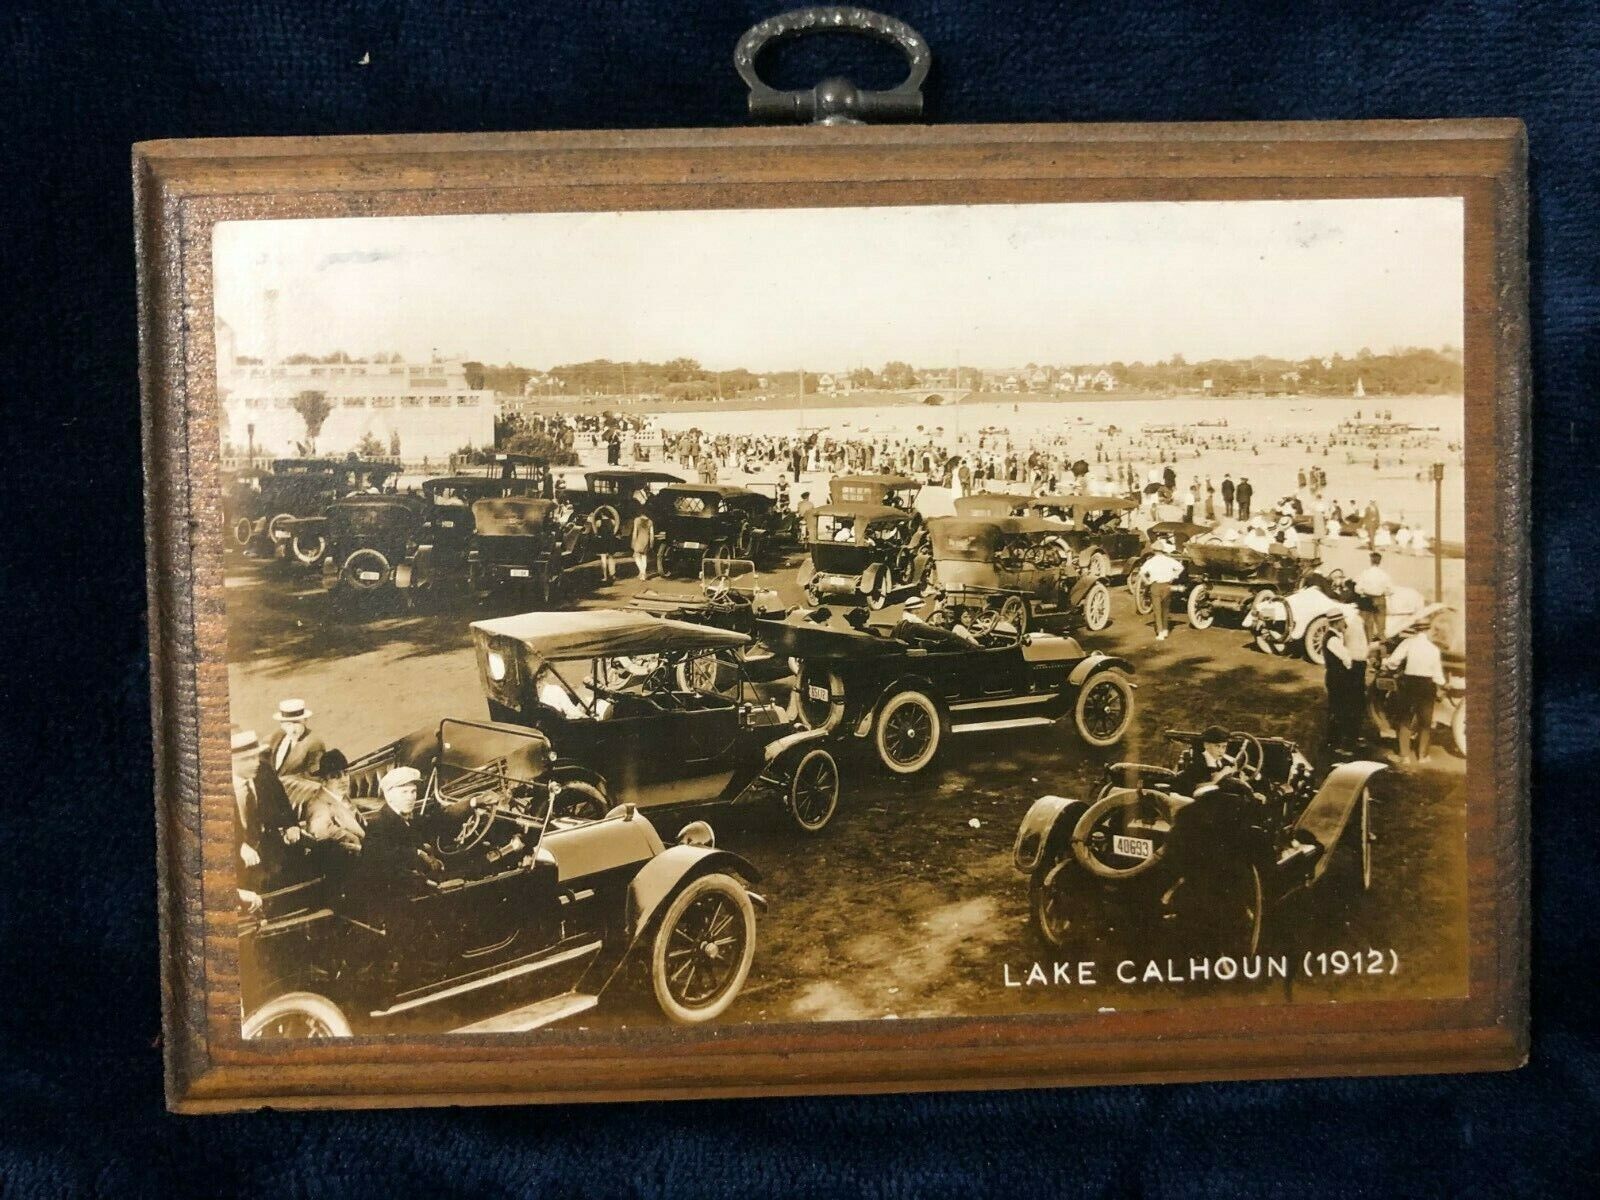 1912 Lake Calhoun, Minneapolis MN Photo Postcard Mounted on Wood Plaque